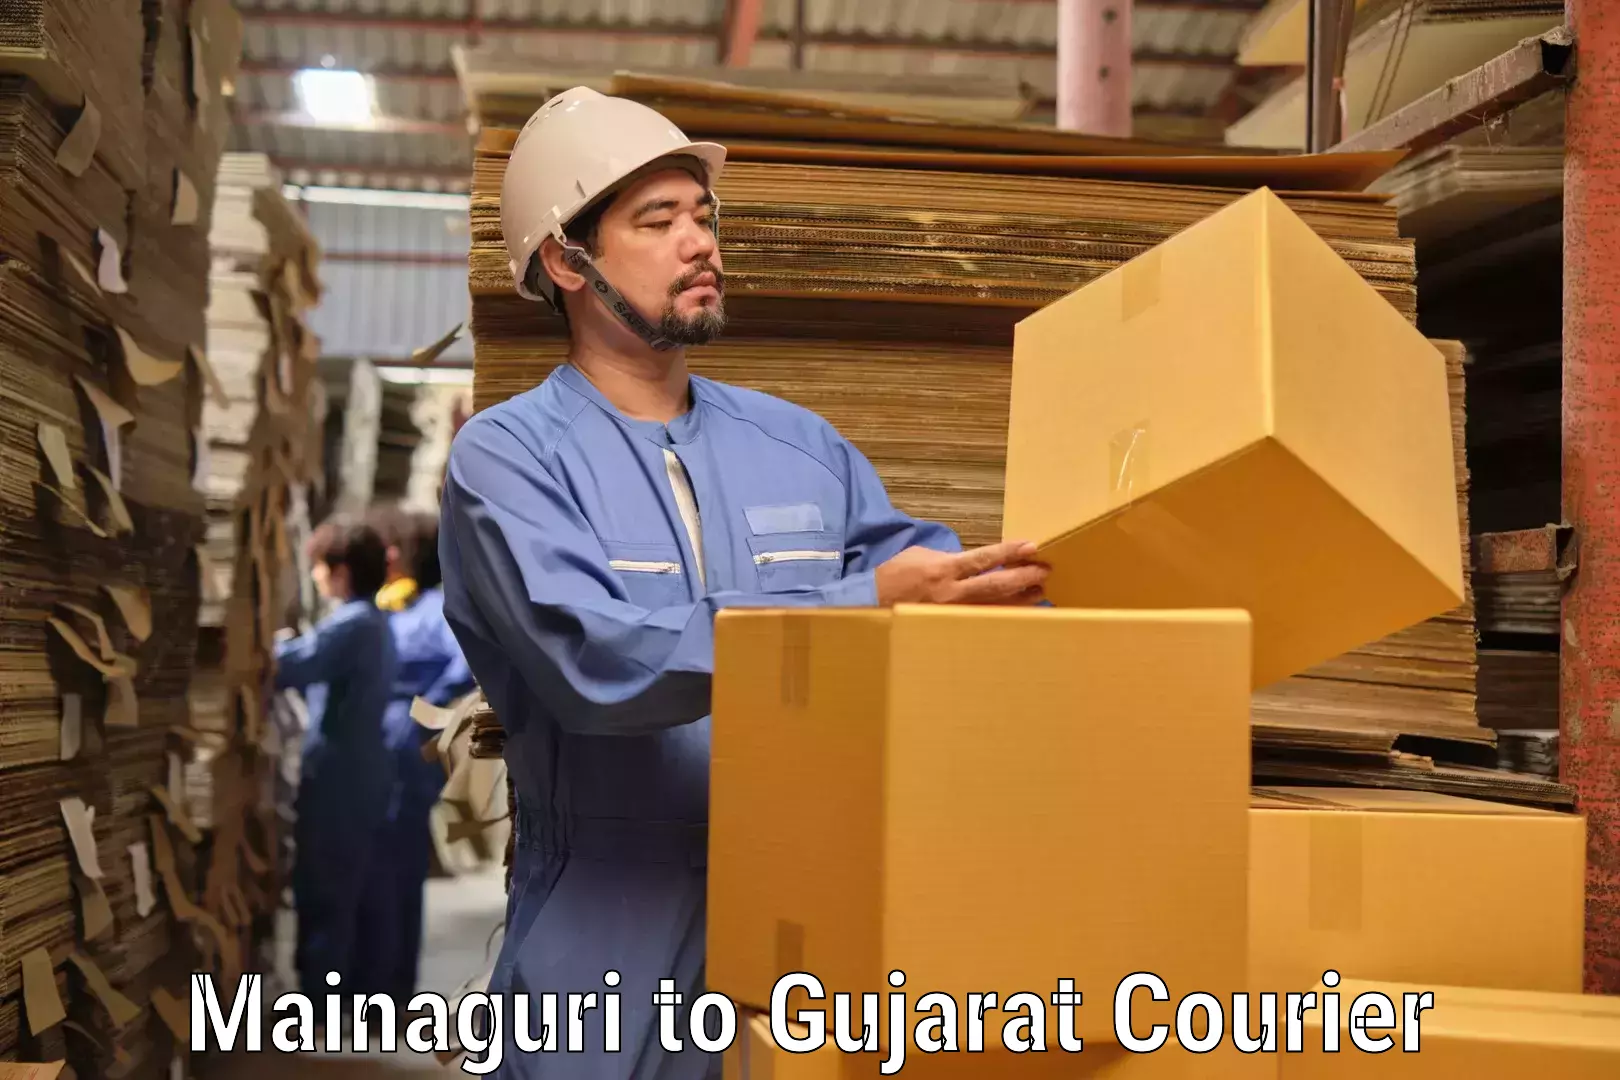 Express postal services Mainaguri to Gujarat